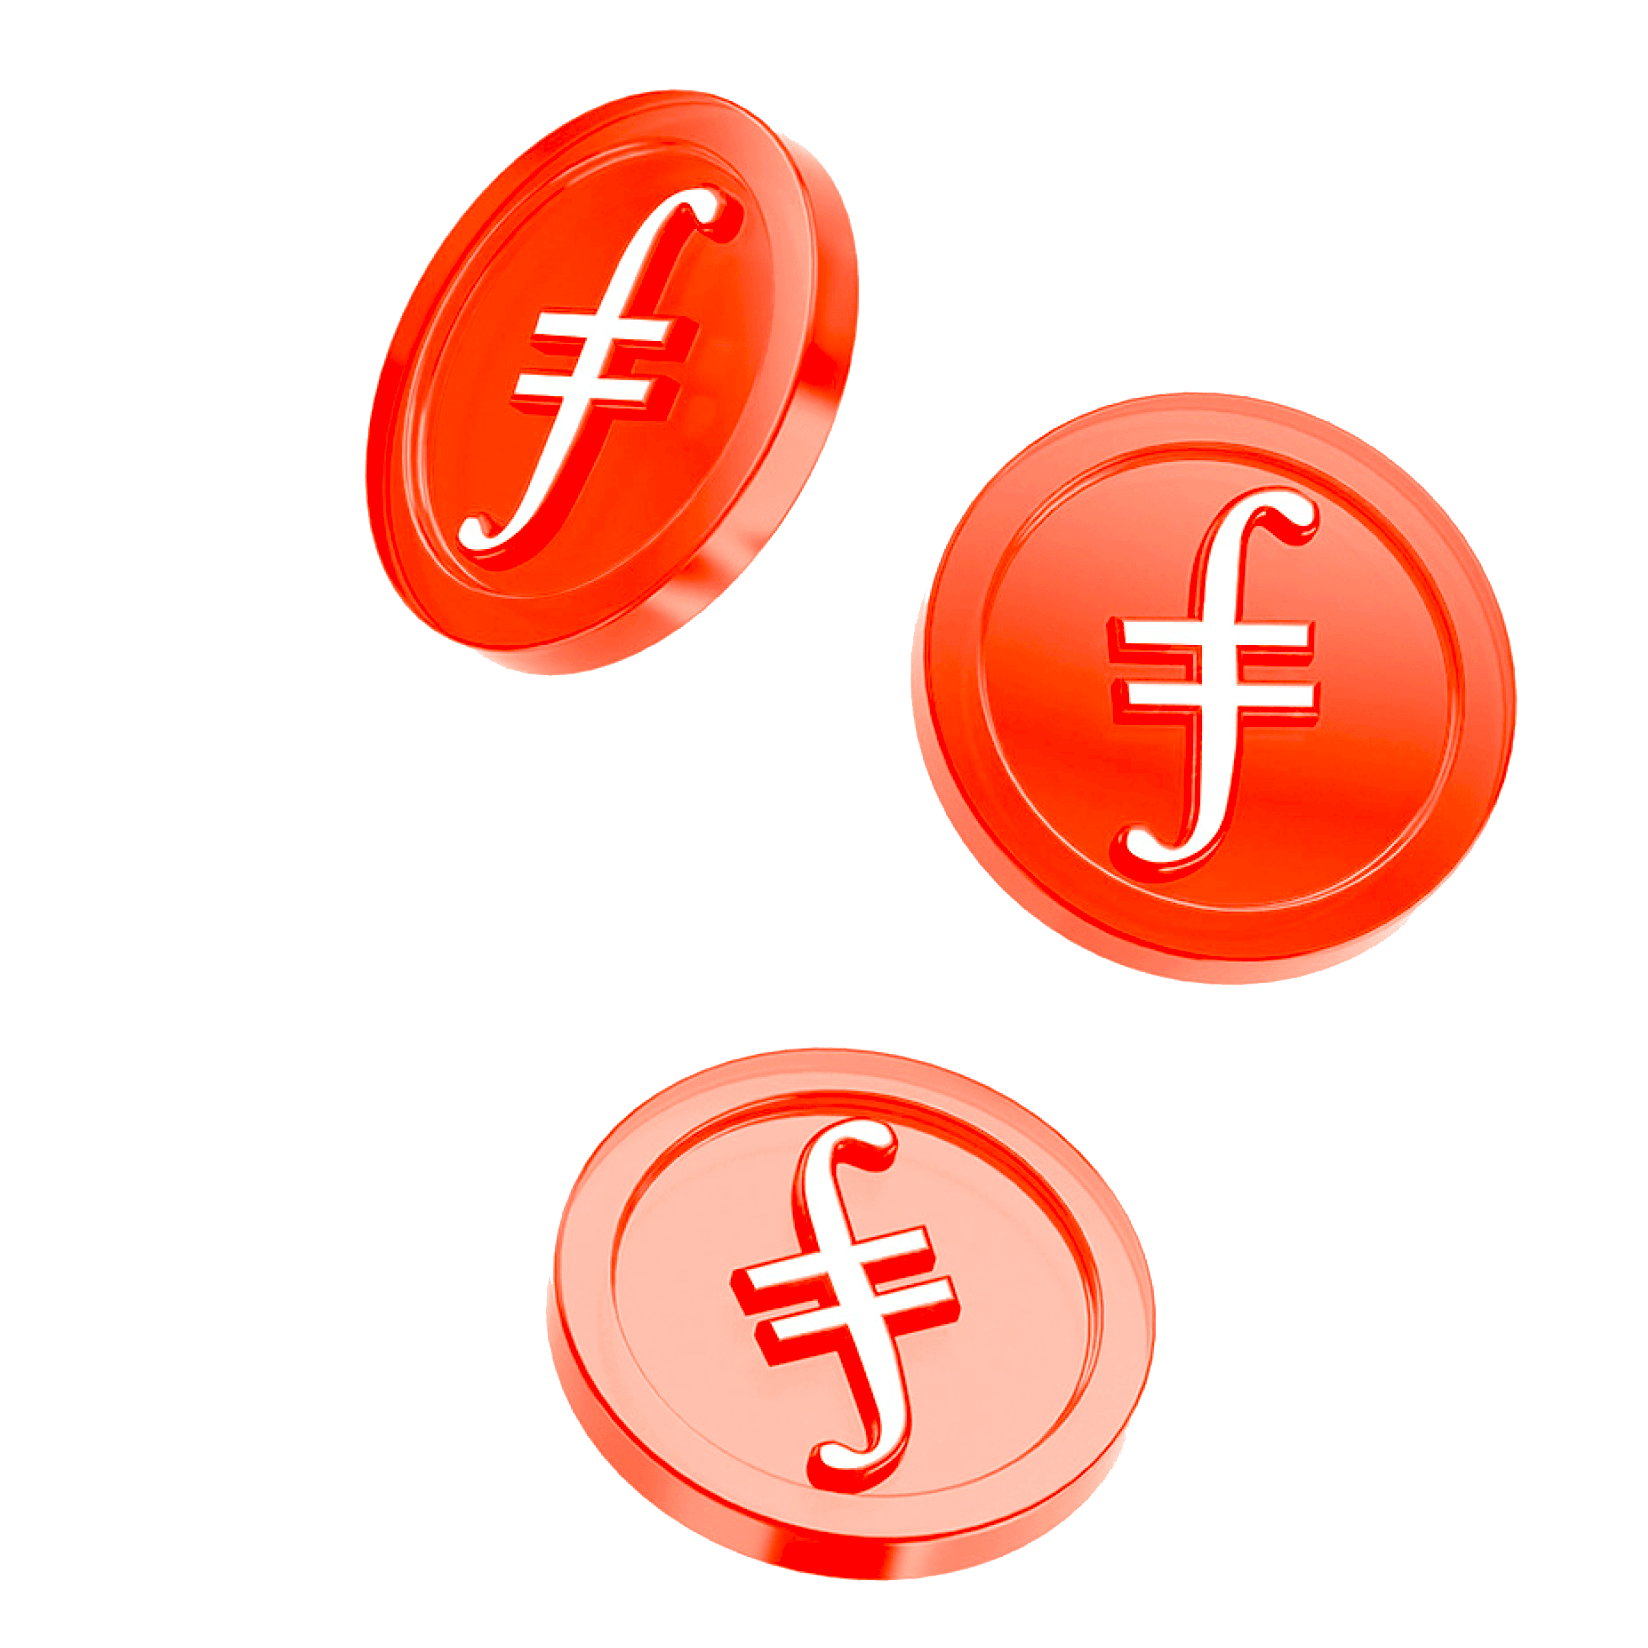 Filecoin crypto coins